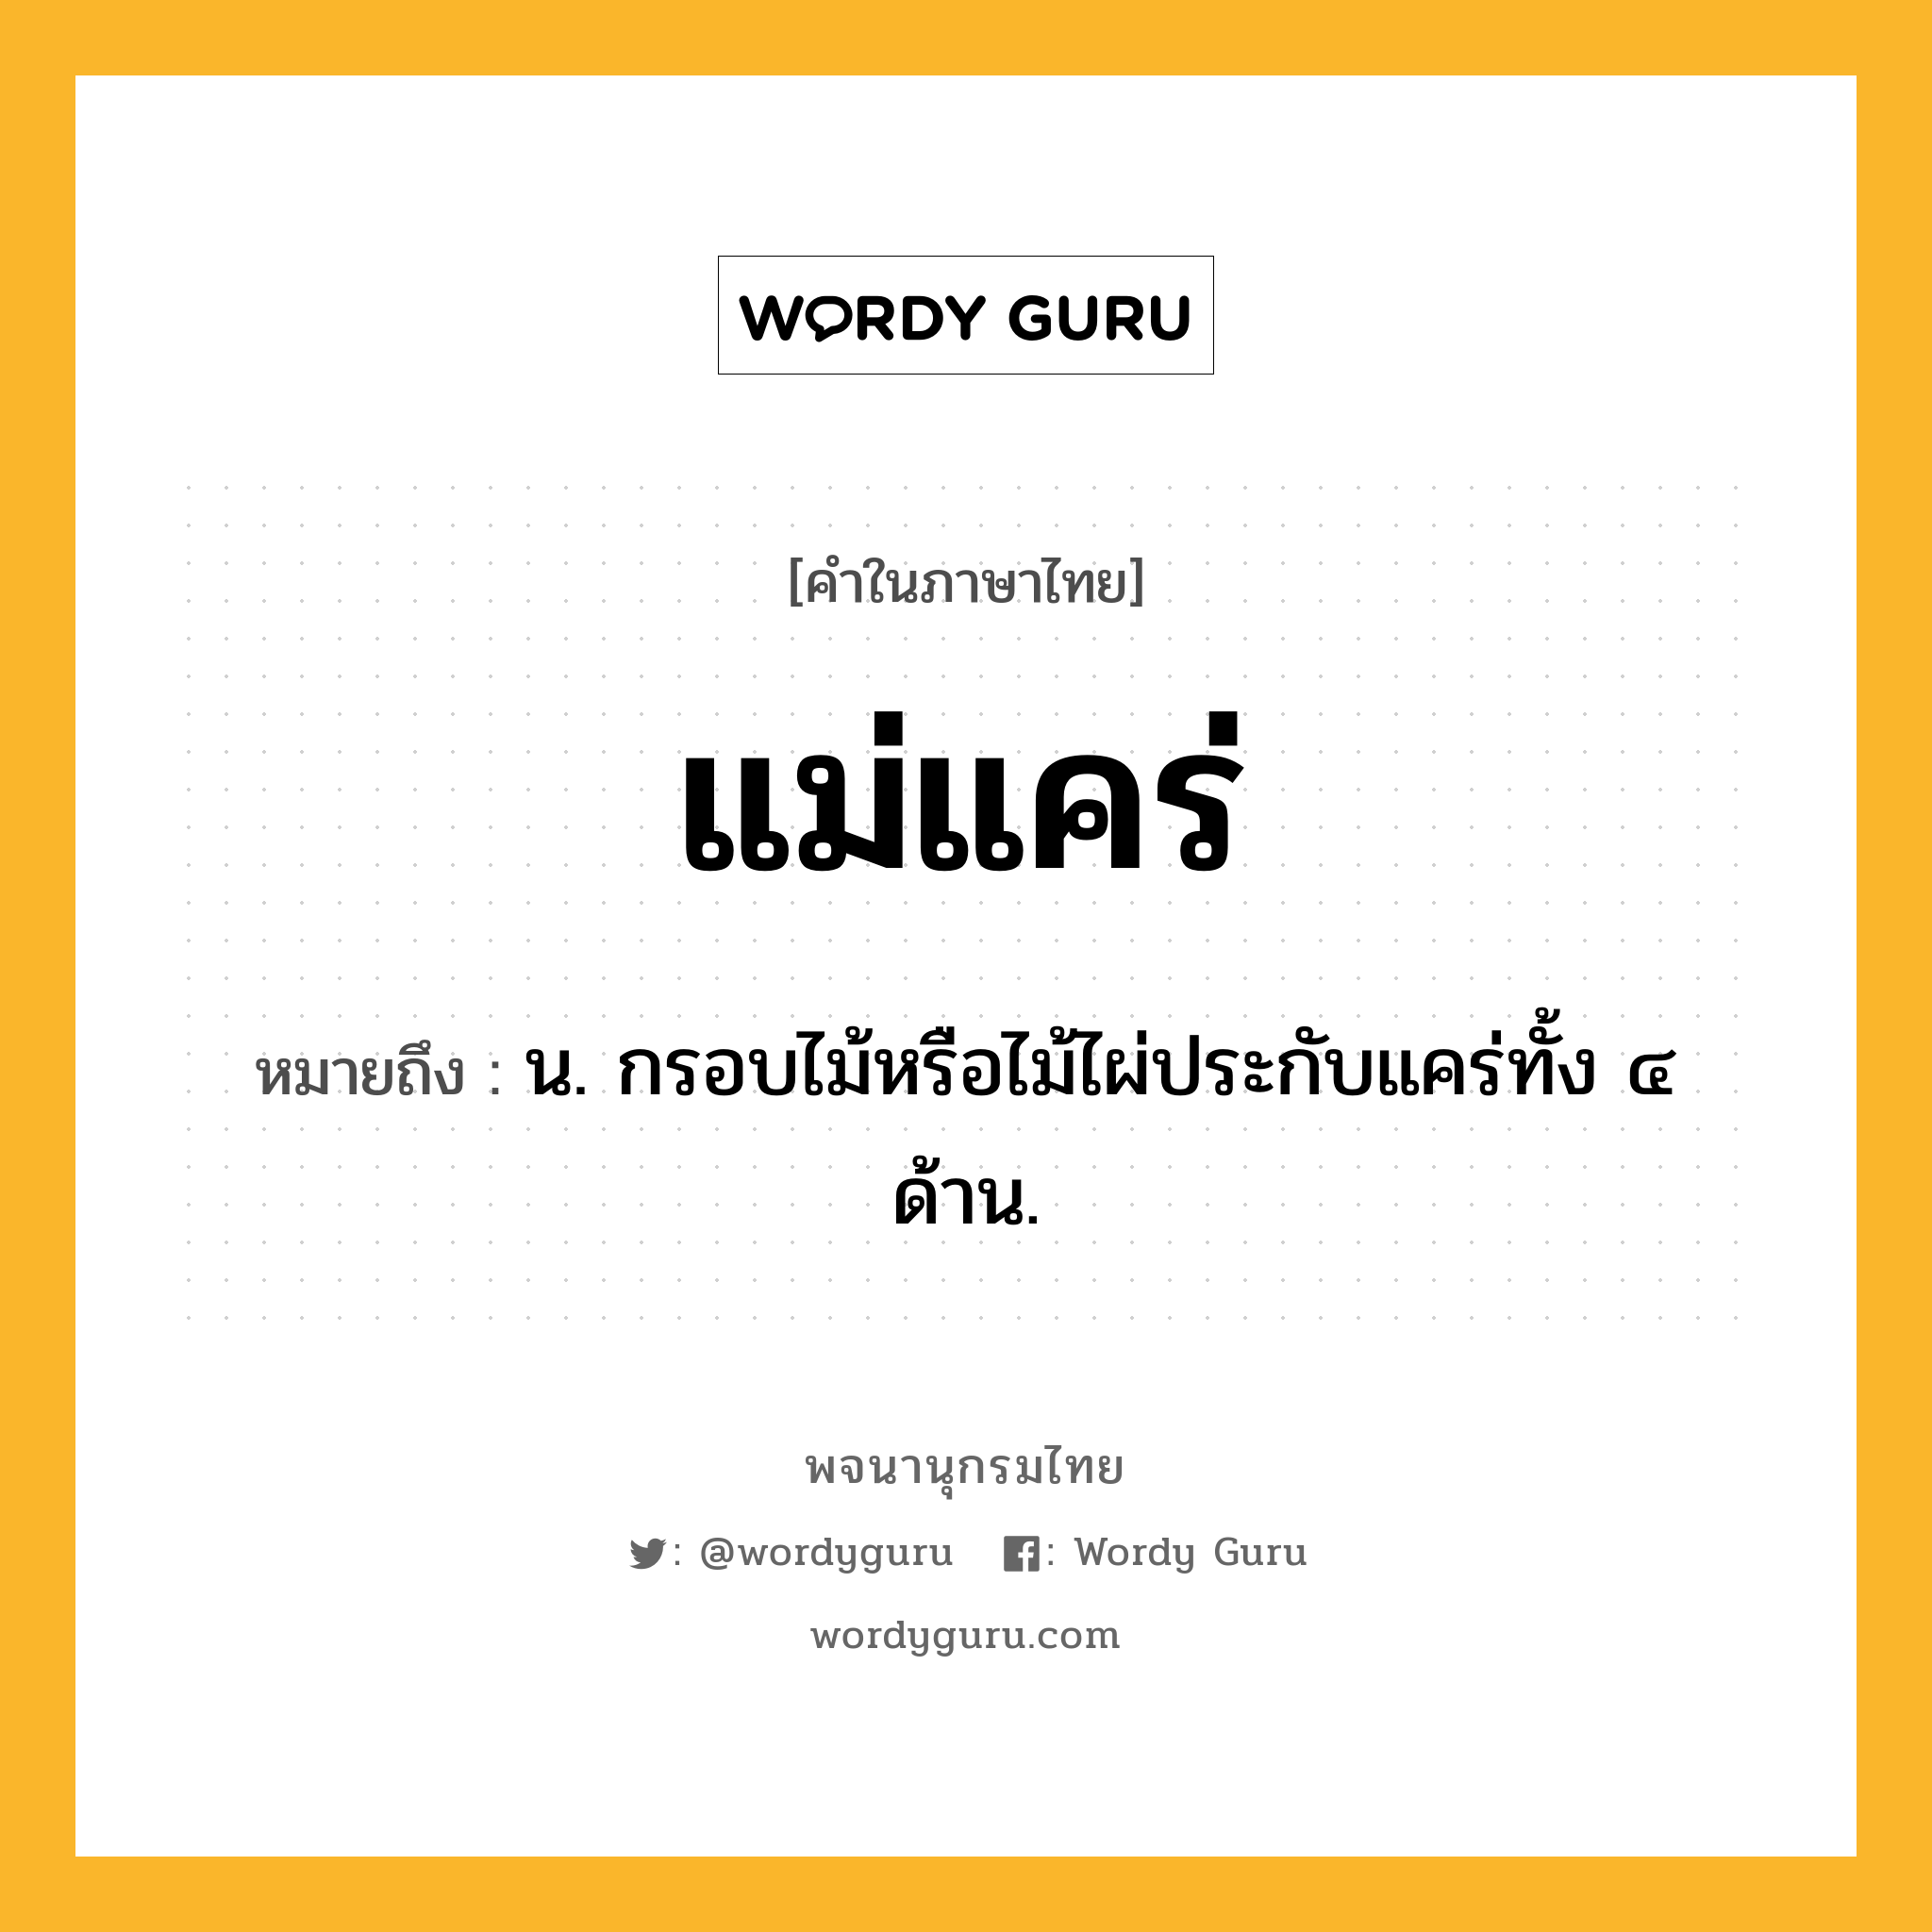 แม่แคร่ ความหมาย หมายถึงอะไร?, คำในภาษาไทย แม่แคร่ หมายถึง น. กรอบไม้หรือไม้ไผ่ประกับแคร่ทั้ง ๔ ด้าน.